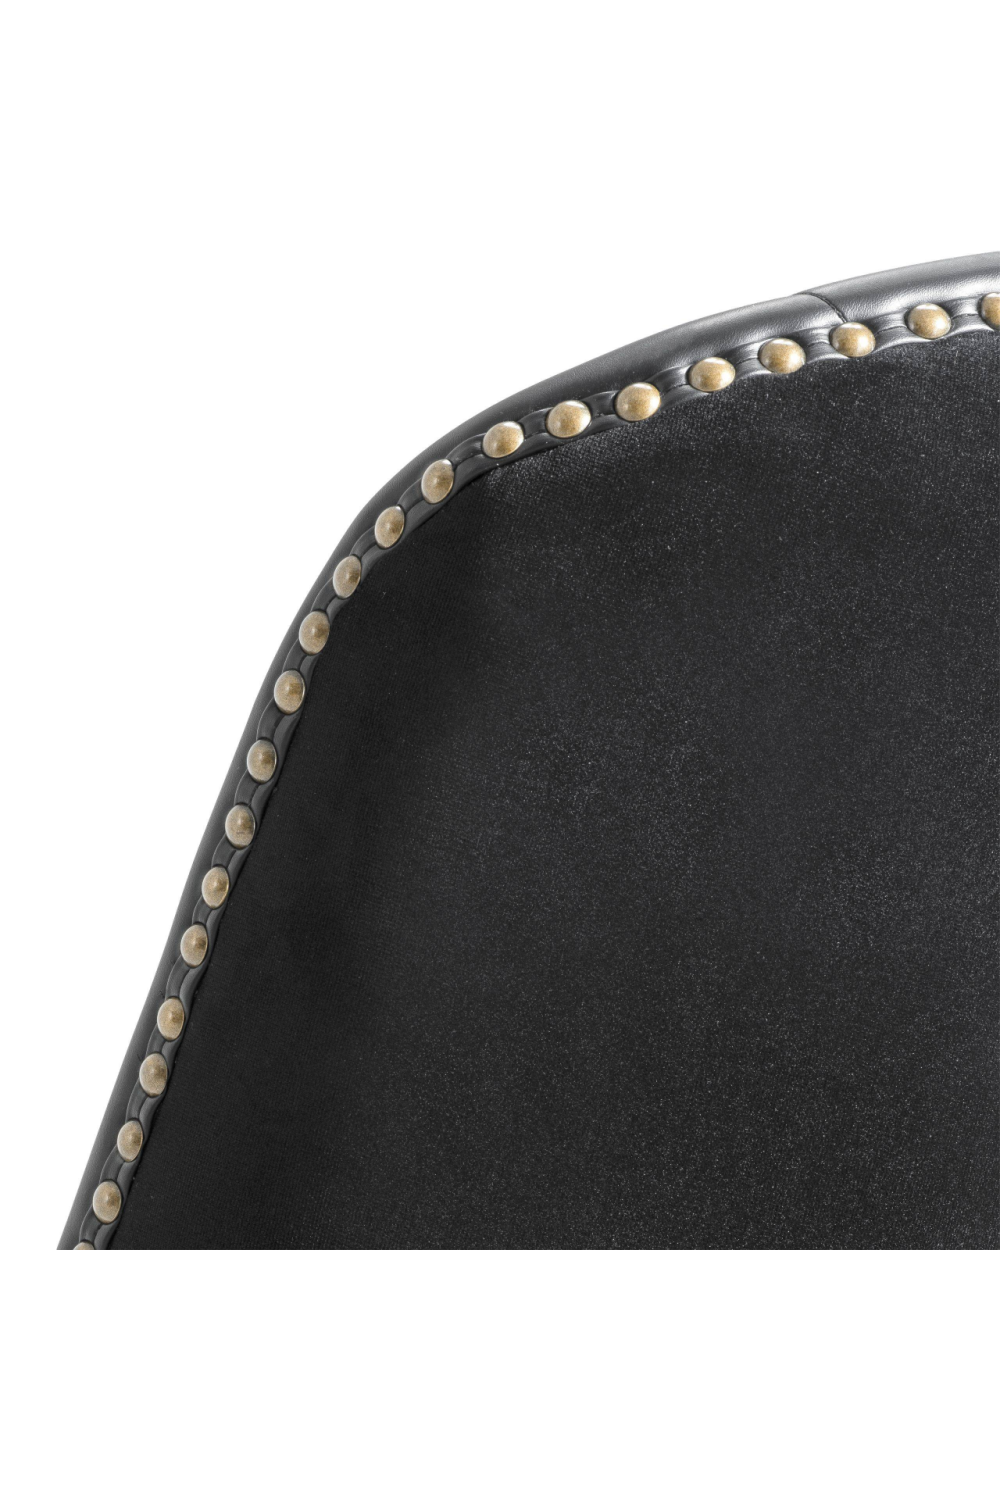 Black Leather Counter Stool | Eichholtz Balmore | Oroa.com